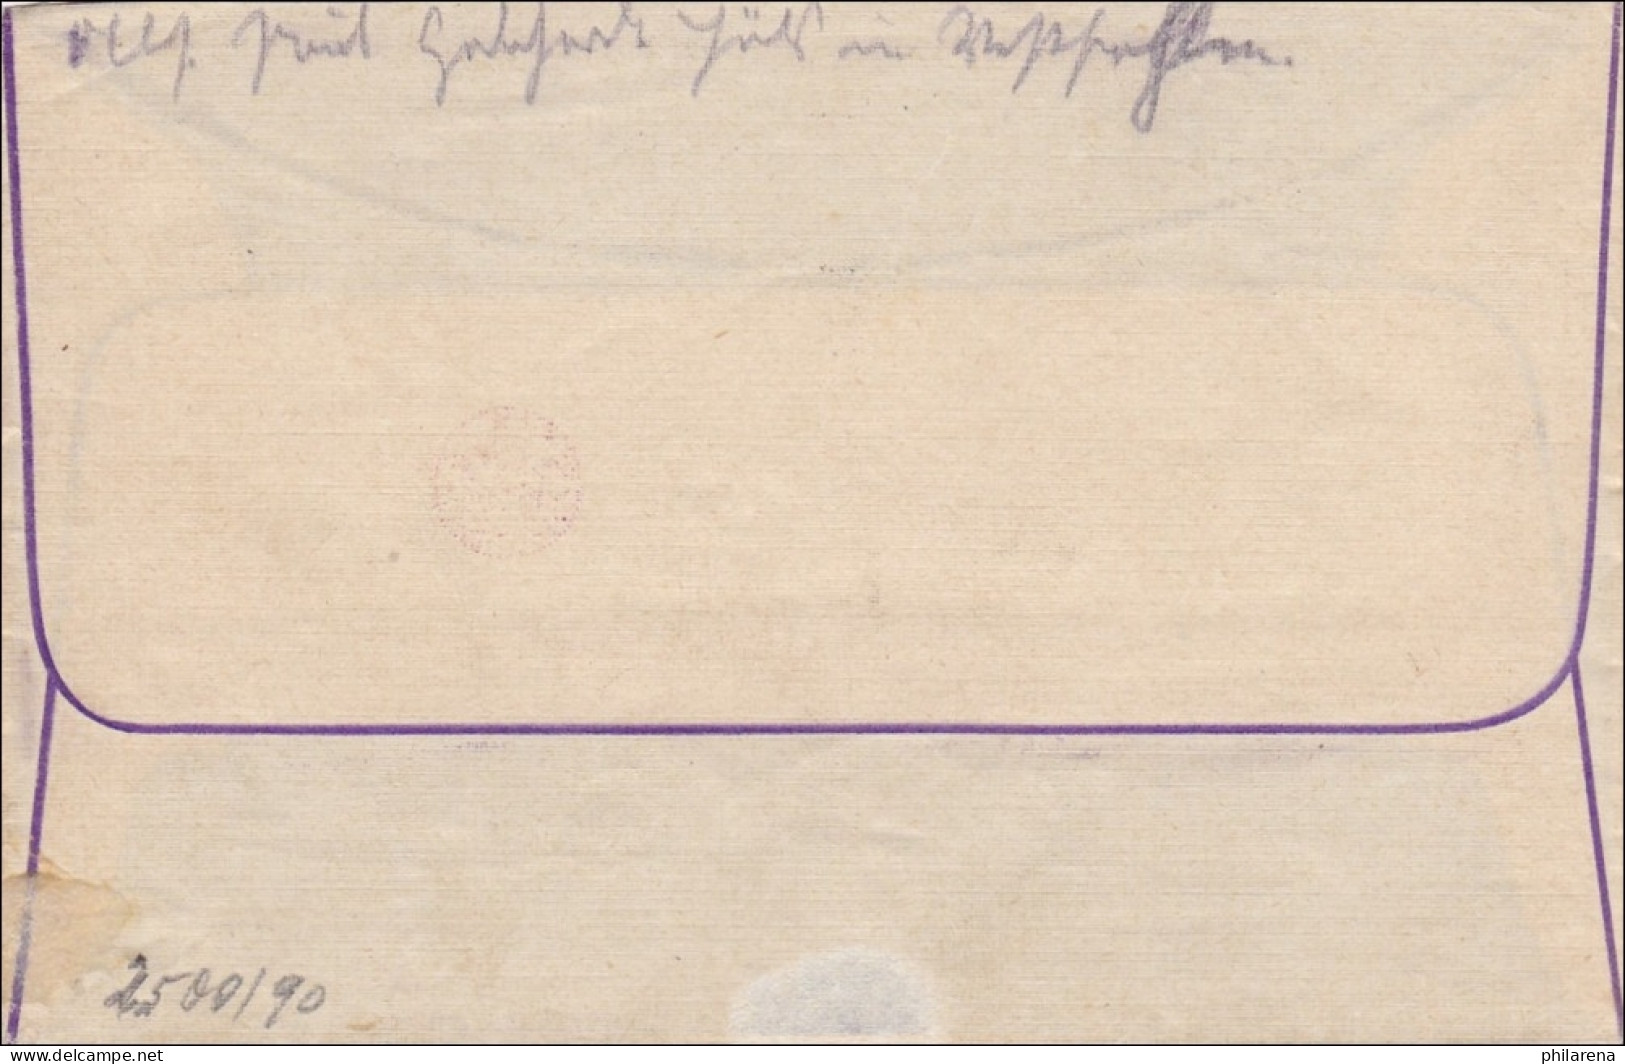 Gebühr Bezahlt: Brief Aus Auls 1923 - Briefe U. Dokumente